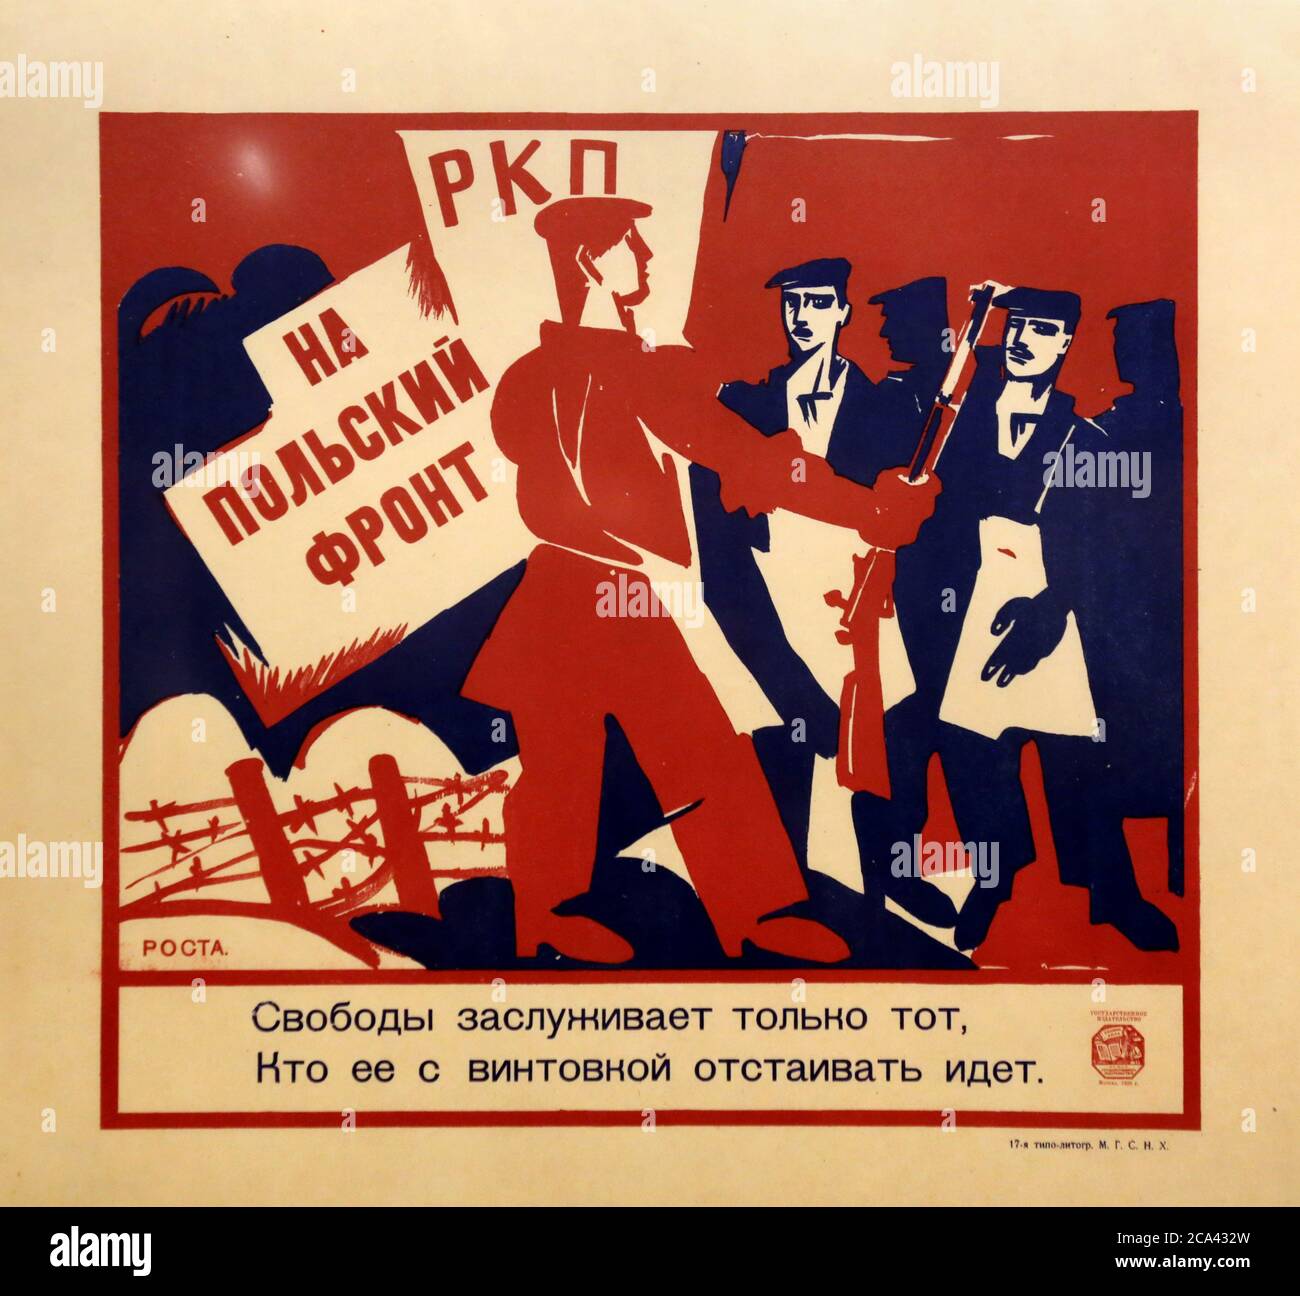 Das polnisch-sowjetische Kriegspropaganda-Plakat von 1920. 'An die polnische Front!' Künstler Ivan Malutin, Vladimir Majakovsky. Stockfoto